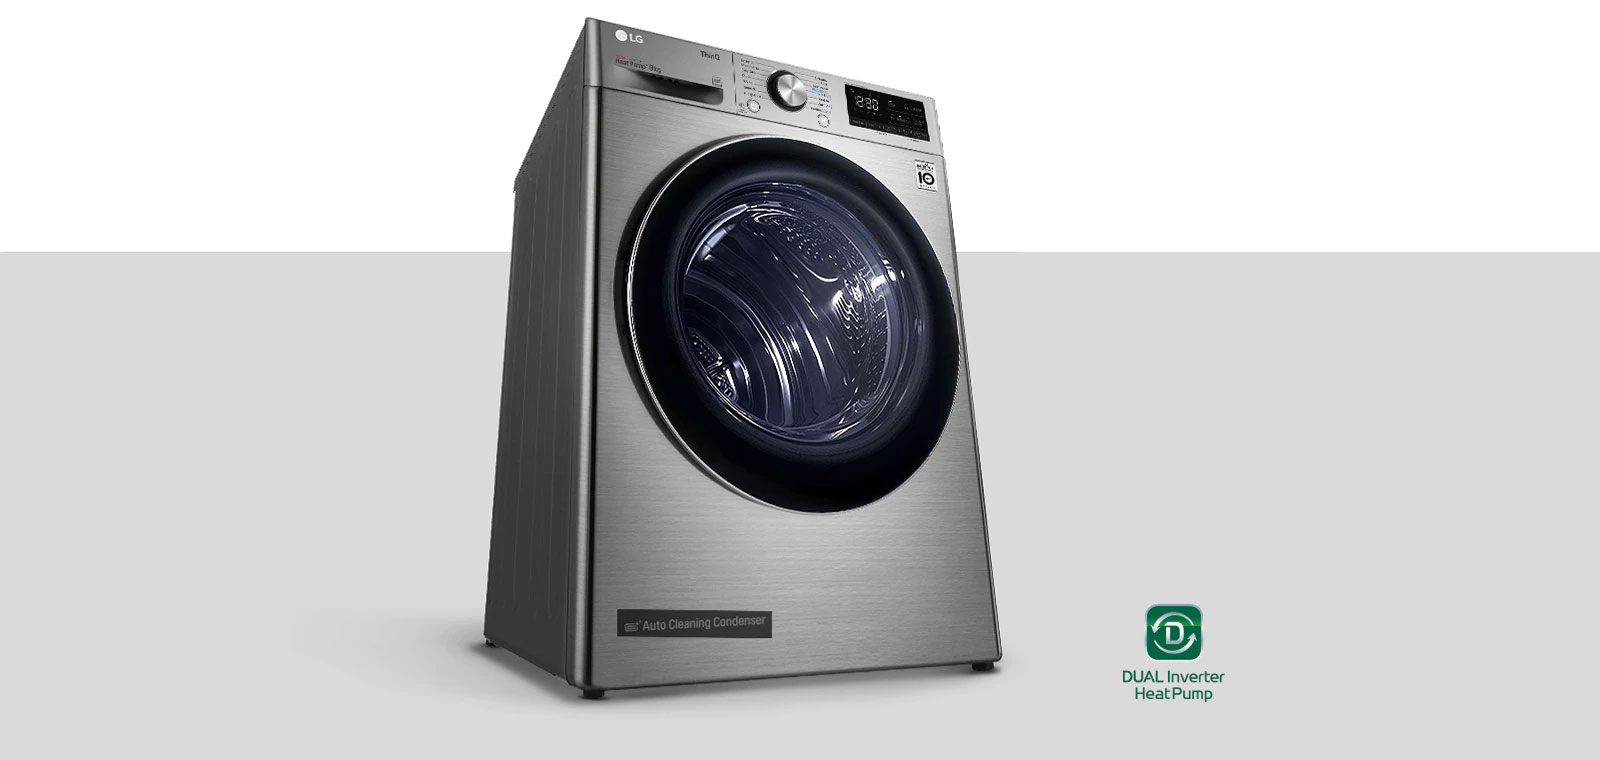 LG Dryer 9 kg 14 programs A+++ - Silver